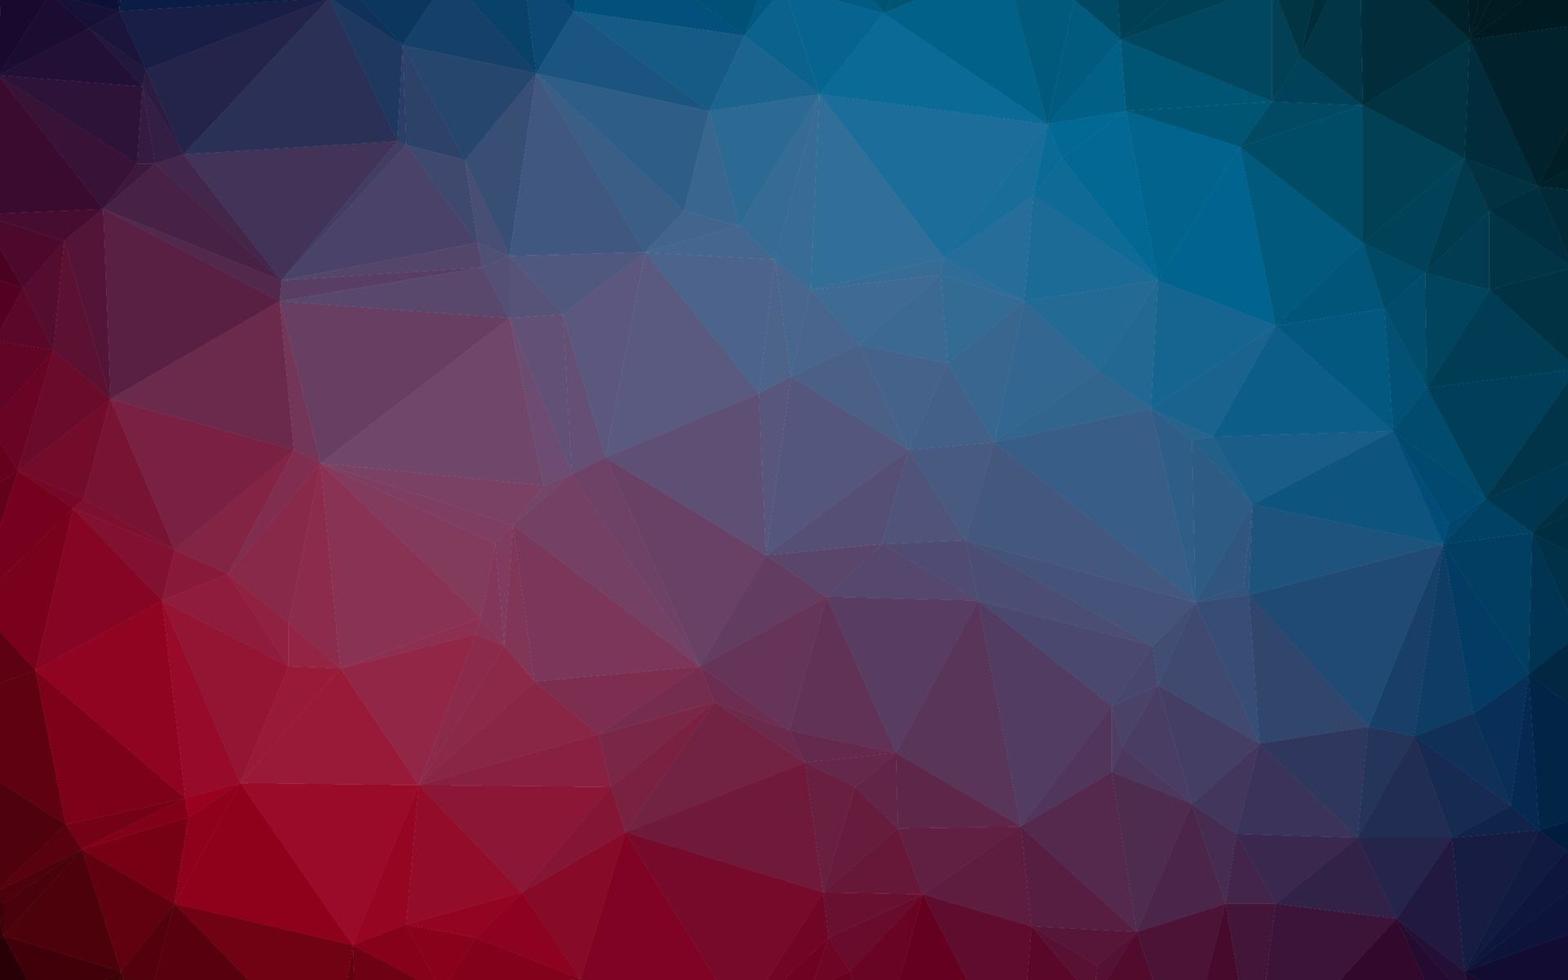 struttura poligonale astratta di vettore blu scuro, rosso.